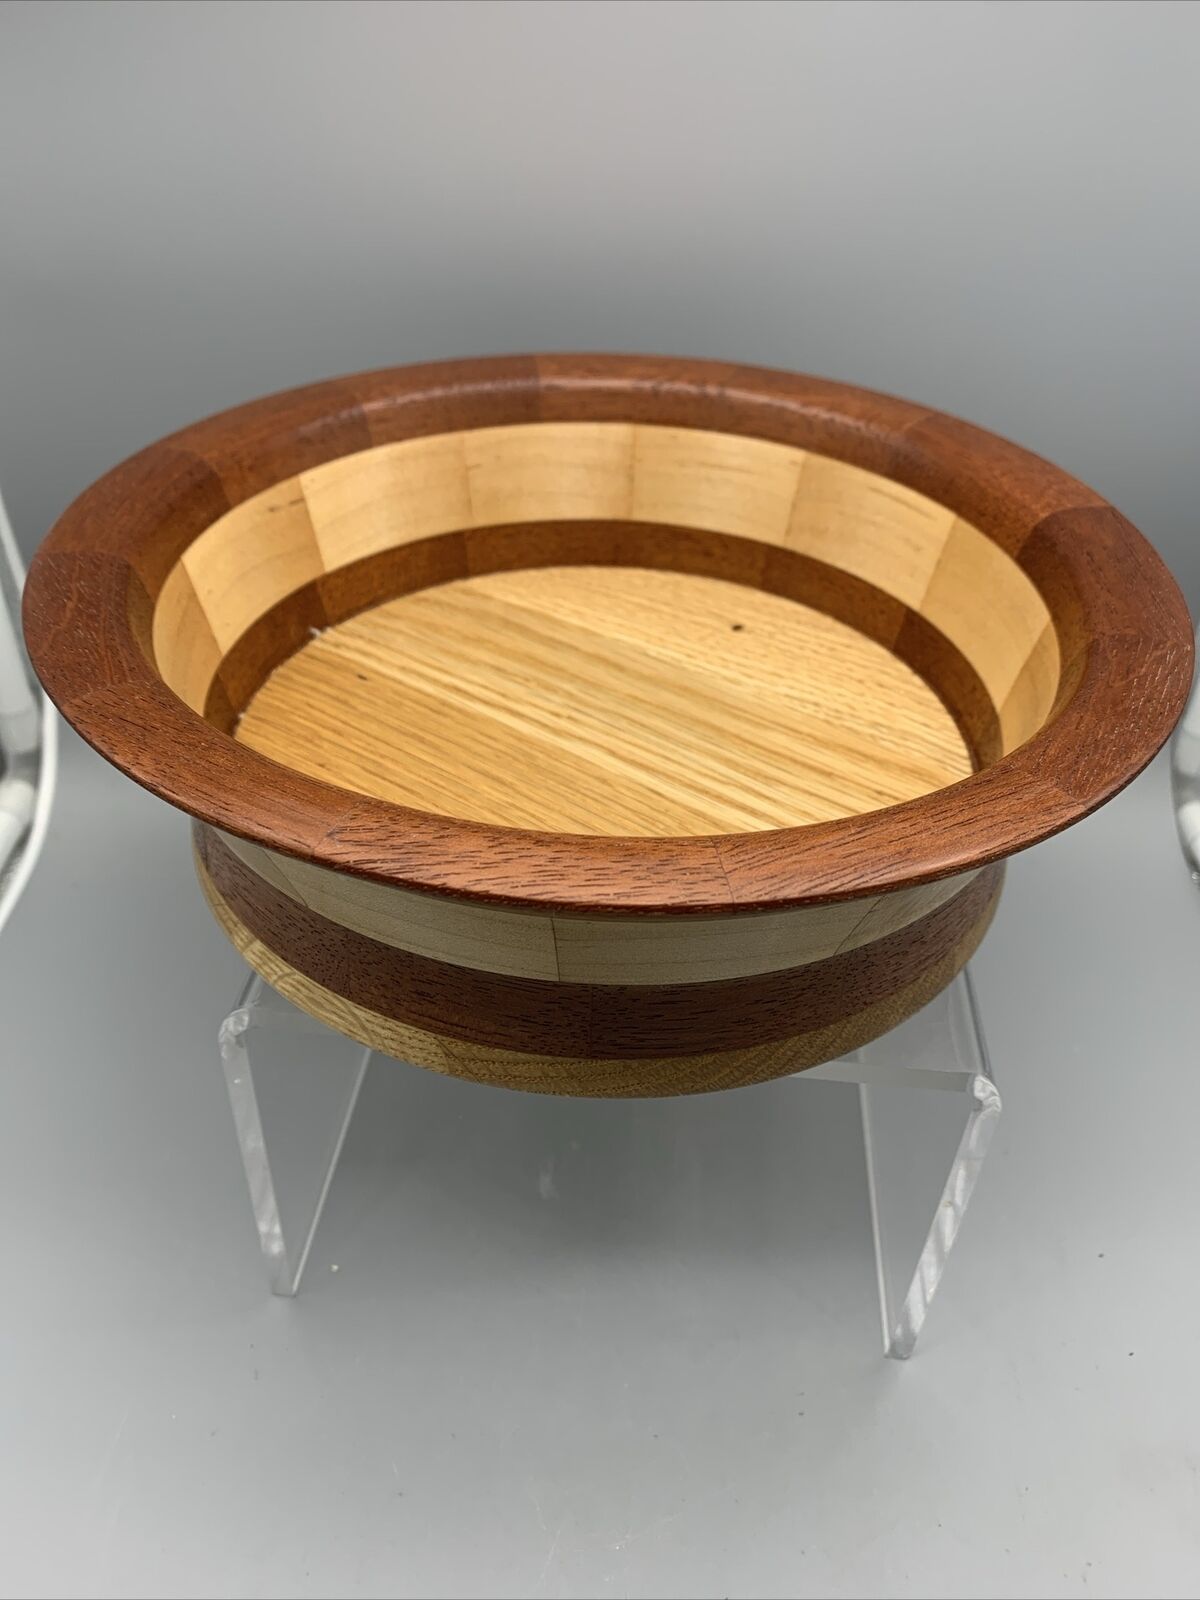 Artisan Handmade Wood Inlaid Segmented Bowl Light Dark Wood Round Multi tone